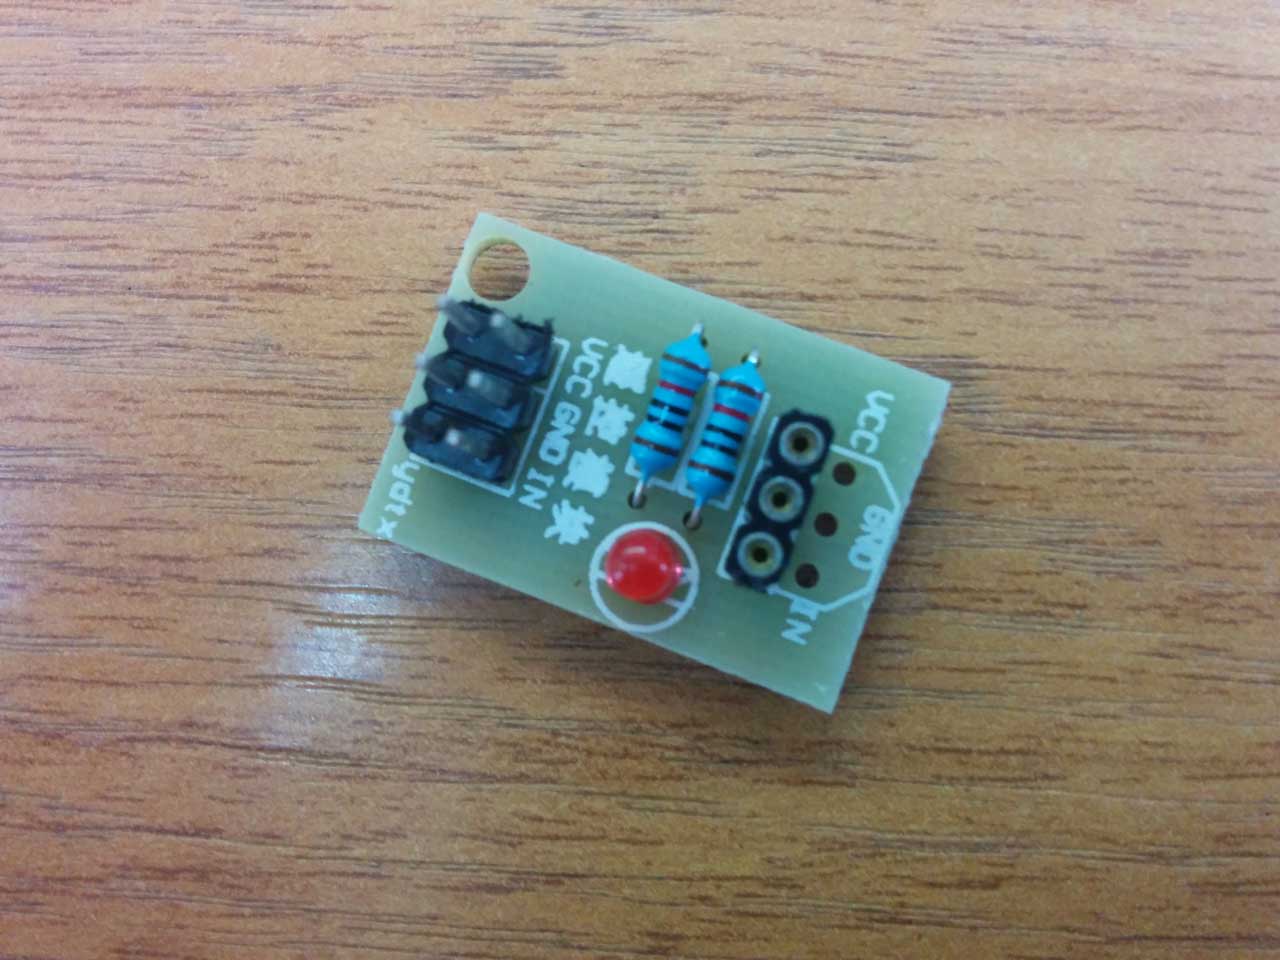 ИК пульт arduino плата с подтягивающи резистром